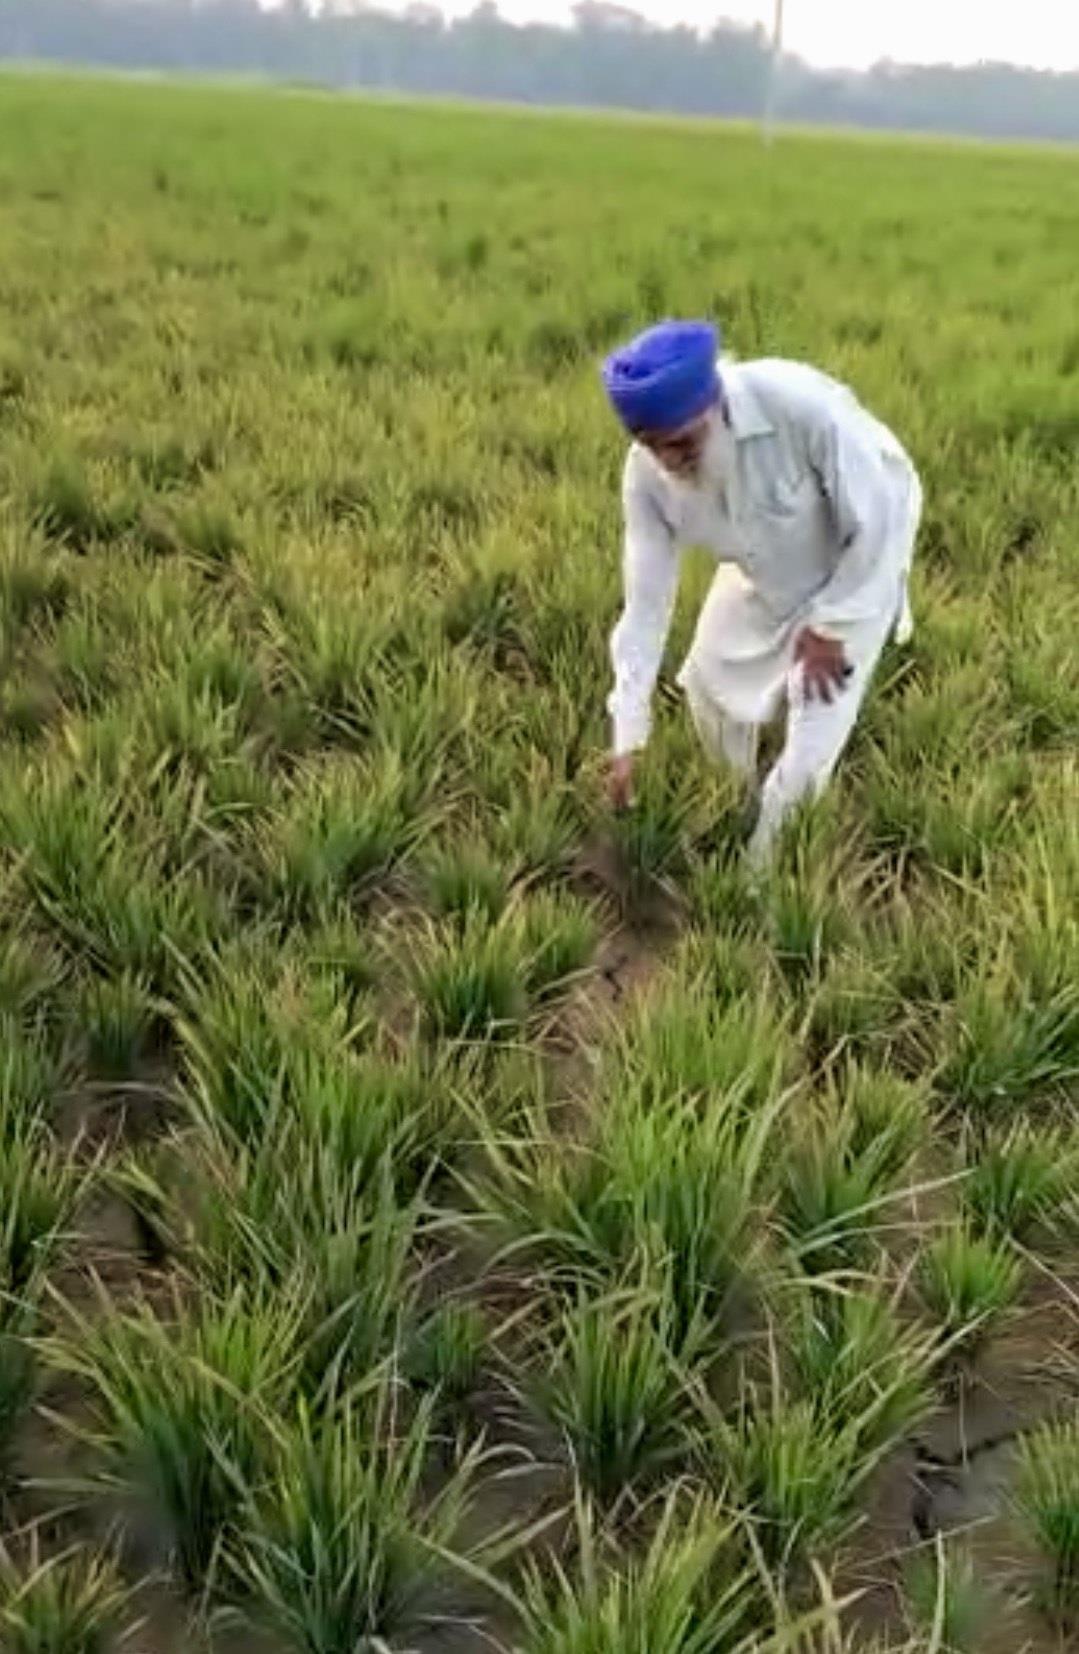 Stunted paddy growth stuns Punjab farming community, experts